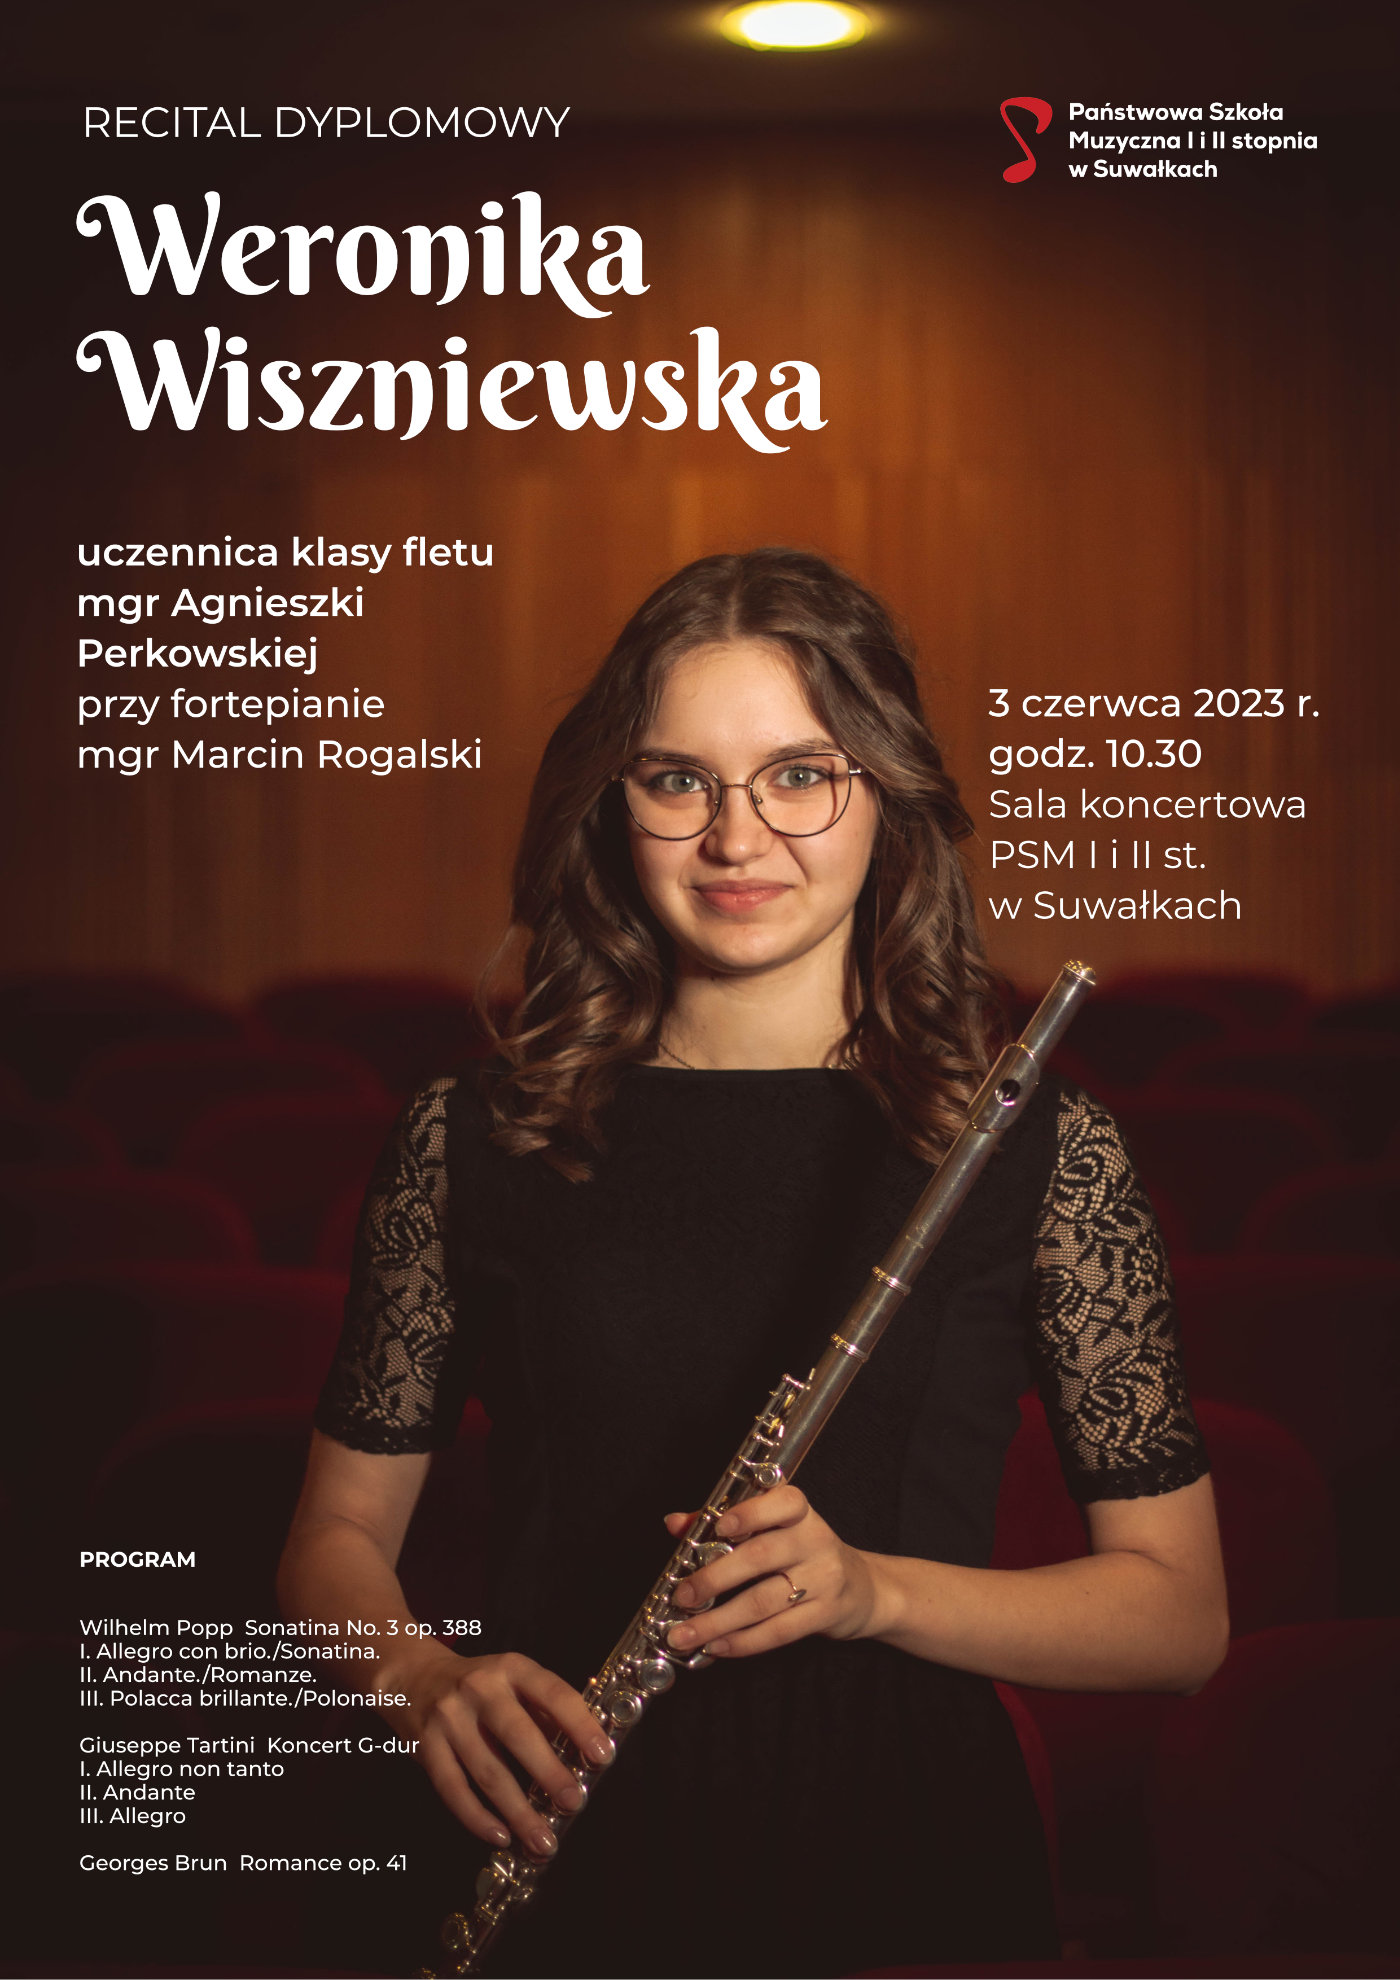 Plakat recitalu dyplomowego Weroniki Wiszniewskiej